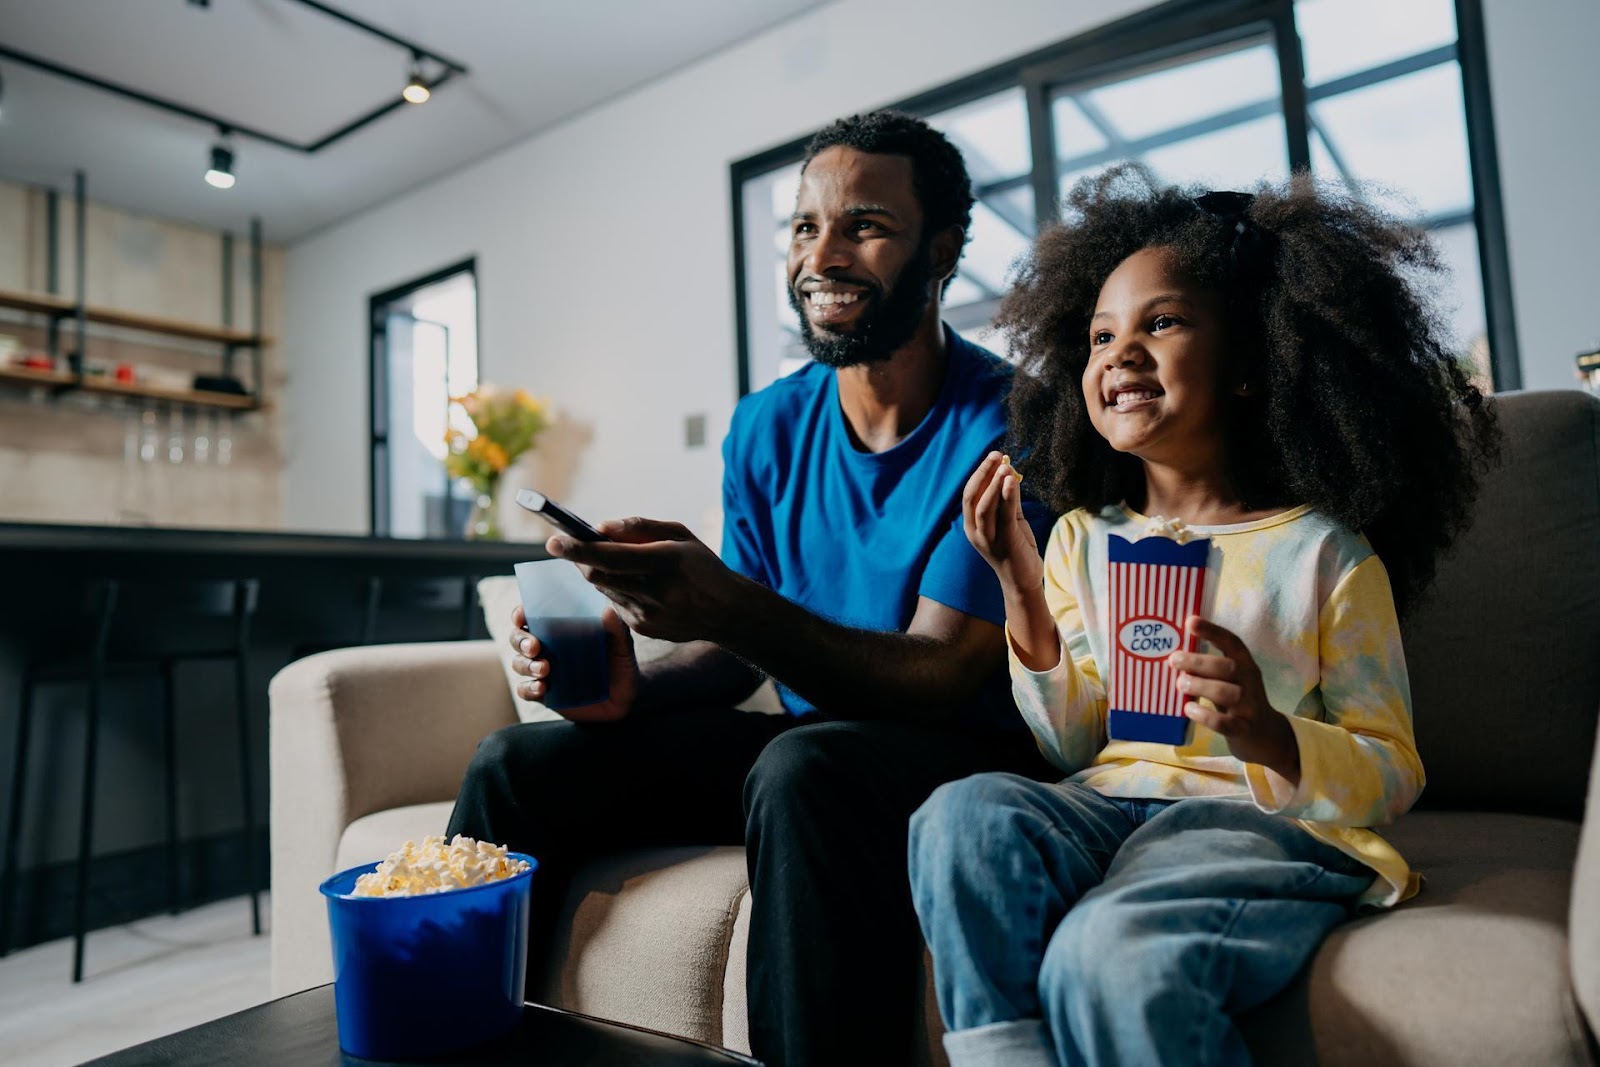 Ein Mann sitzt neben einem kleinen Mädchen auf dem Sofa. Er hält eine Fernbedienung in der Hand, vor ihm auf dem Couchtisch steht ein blauer Eimer mit Popcorn. Das Mädchen hält eine Papiertüte mit Popcorn in der Hand.